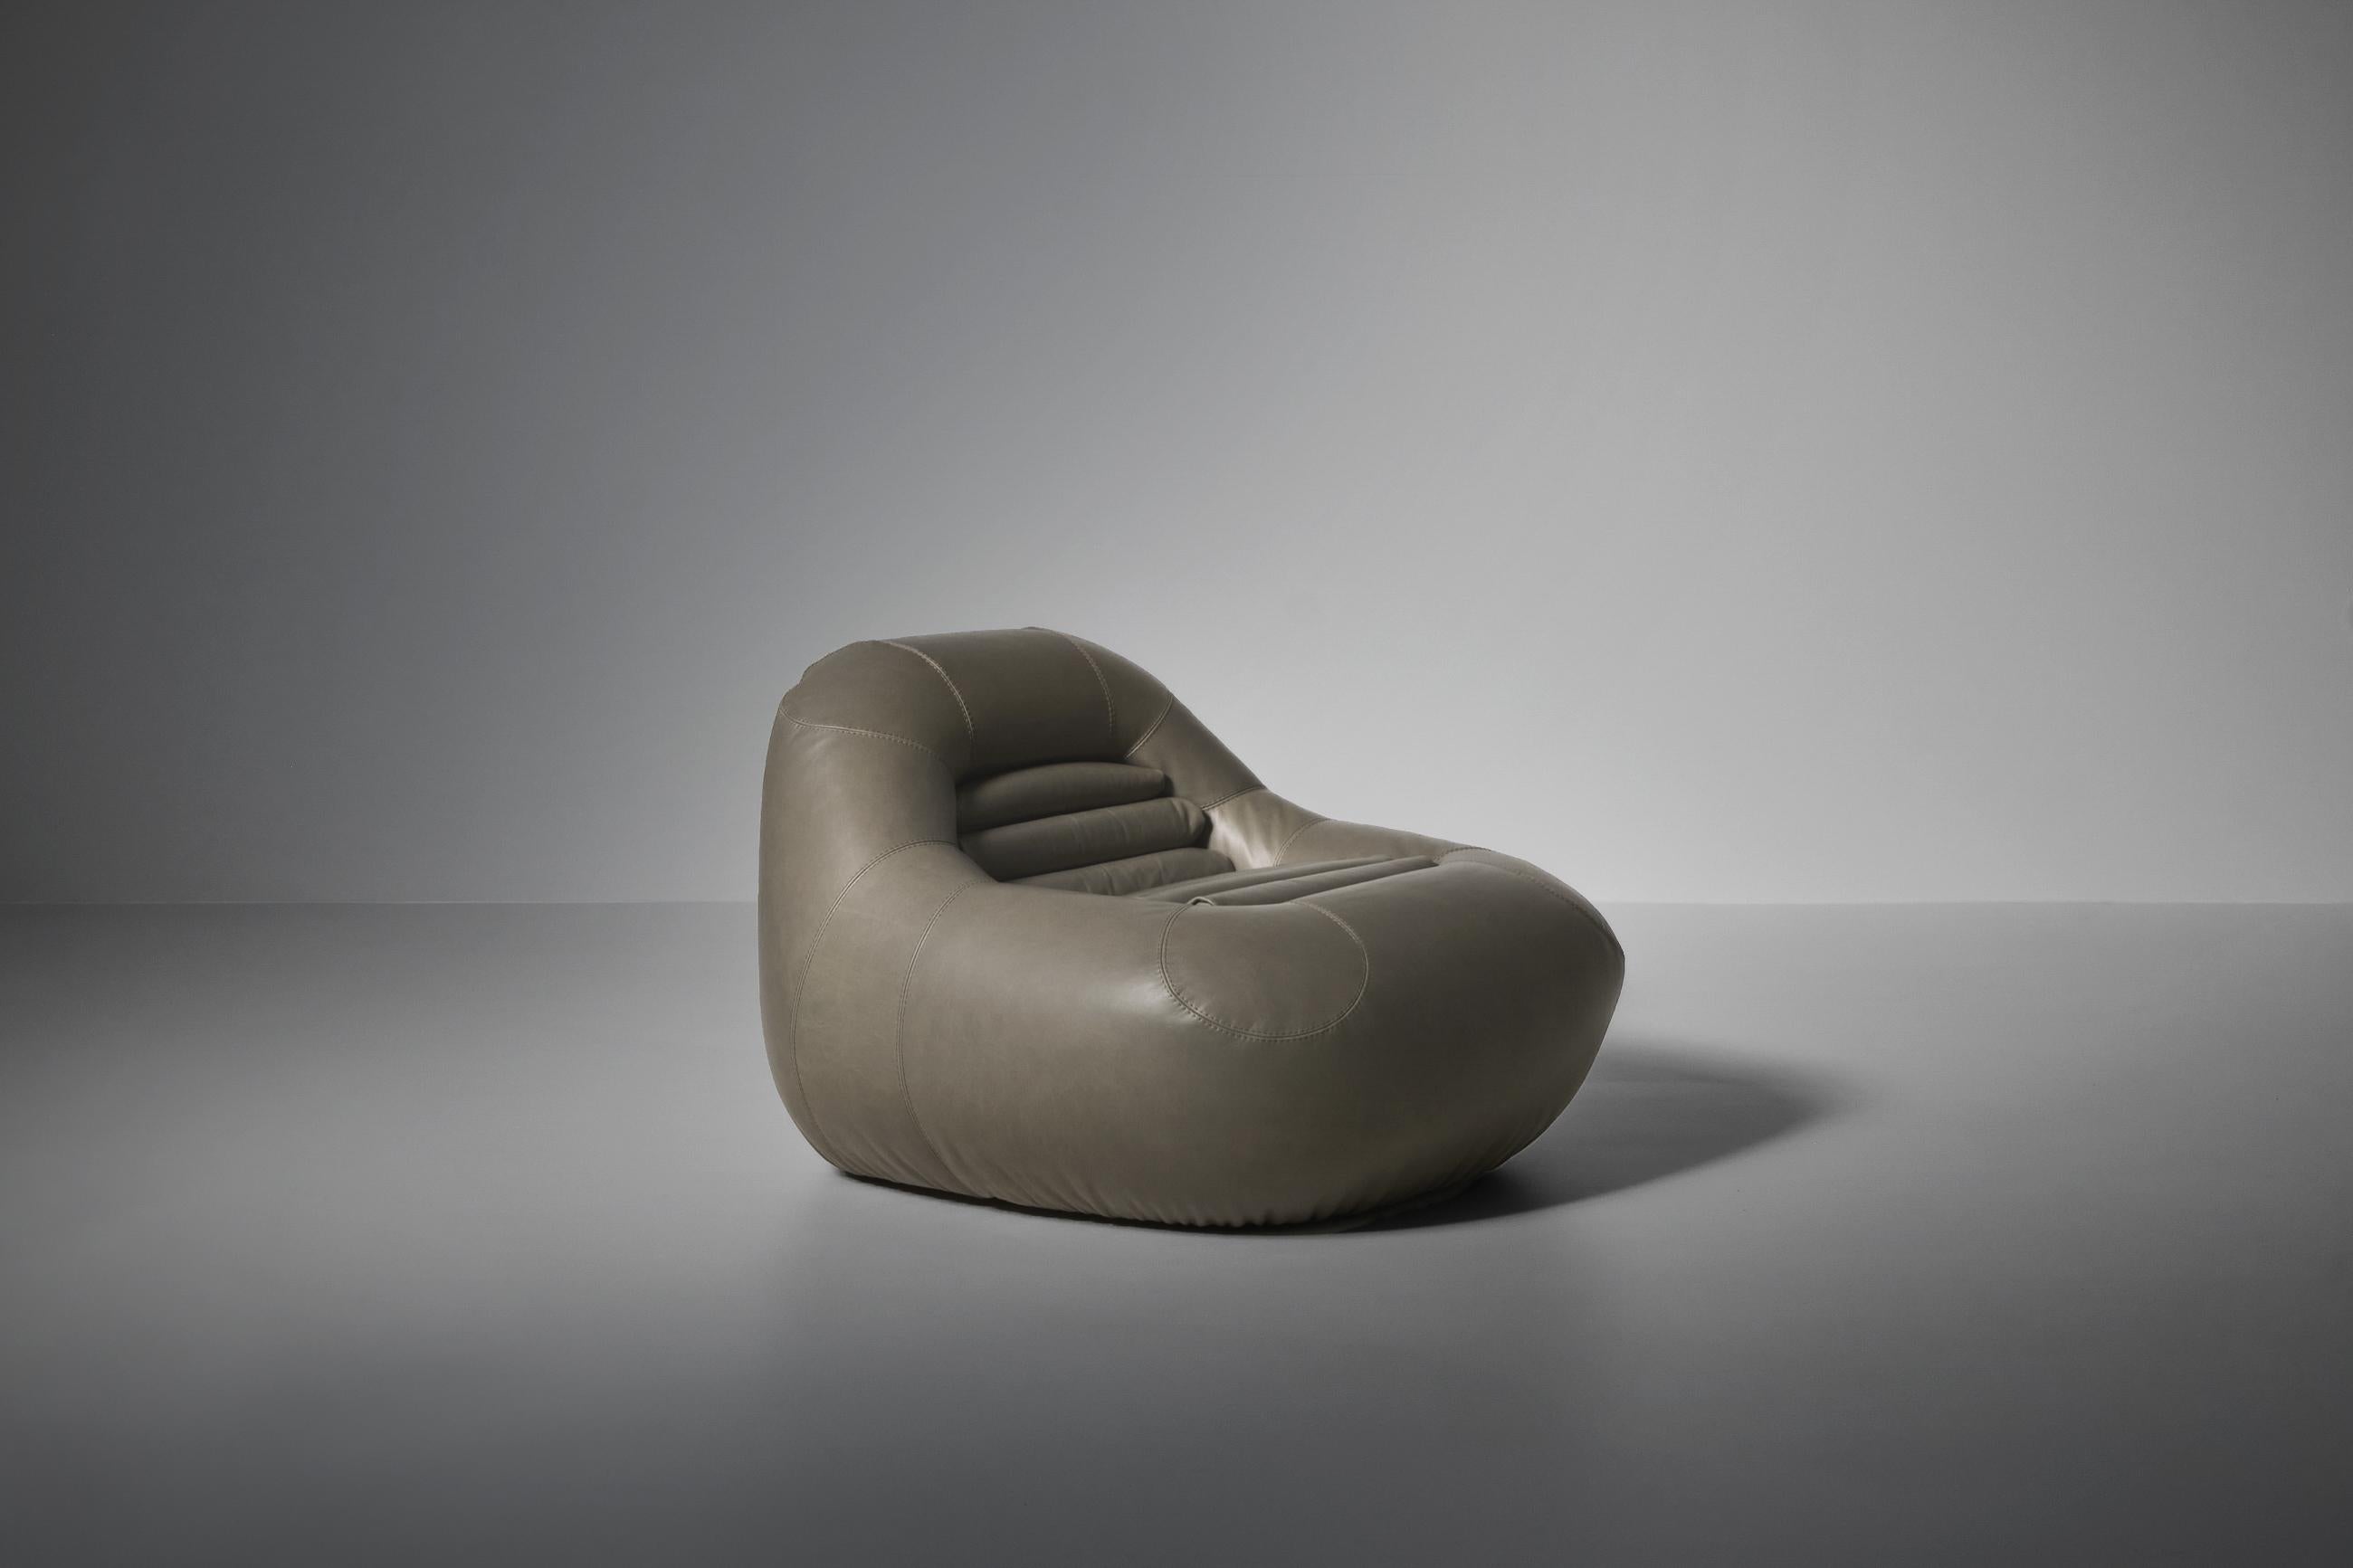 Loungesessel Mod. 'Carrera' in Leder von De Pas, D'Urbino & Lomazzi für BBB Bonacina, Italien ca. 1965. Ein ikonisches Modell, das als Einzelsessel schwer zu finden ist. Fantastisches, auffälliges Design in klobiger Form. Der Stuhl wurde komplett